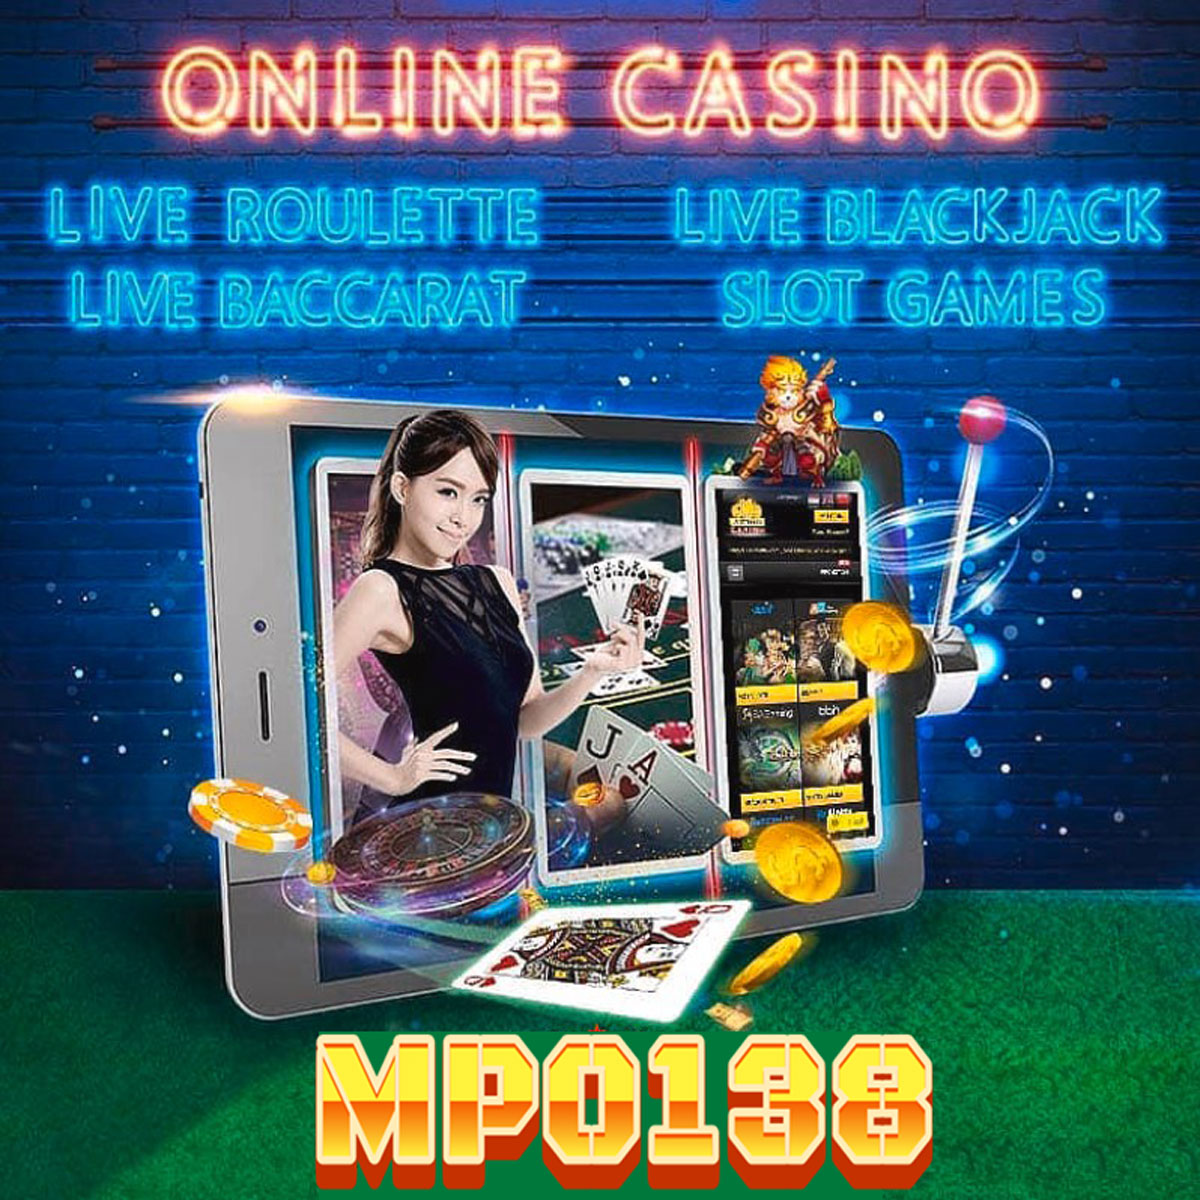 MPO138 agen casino online